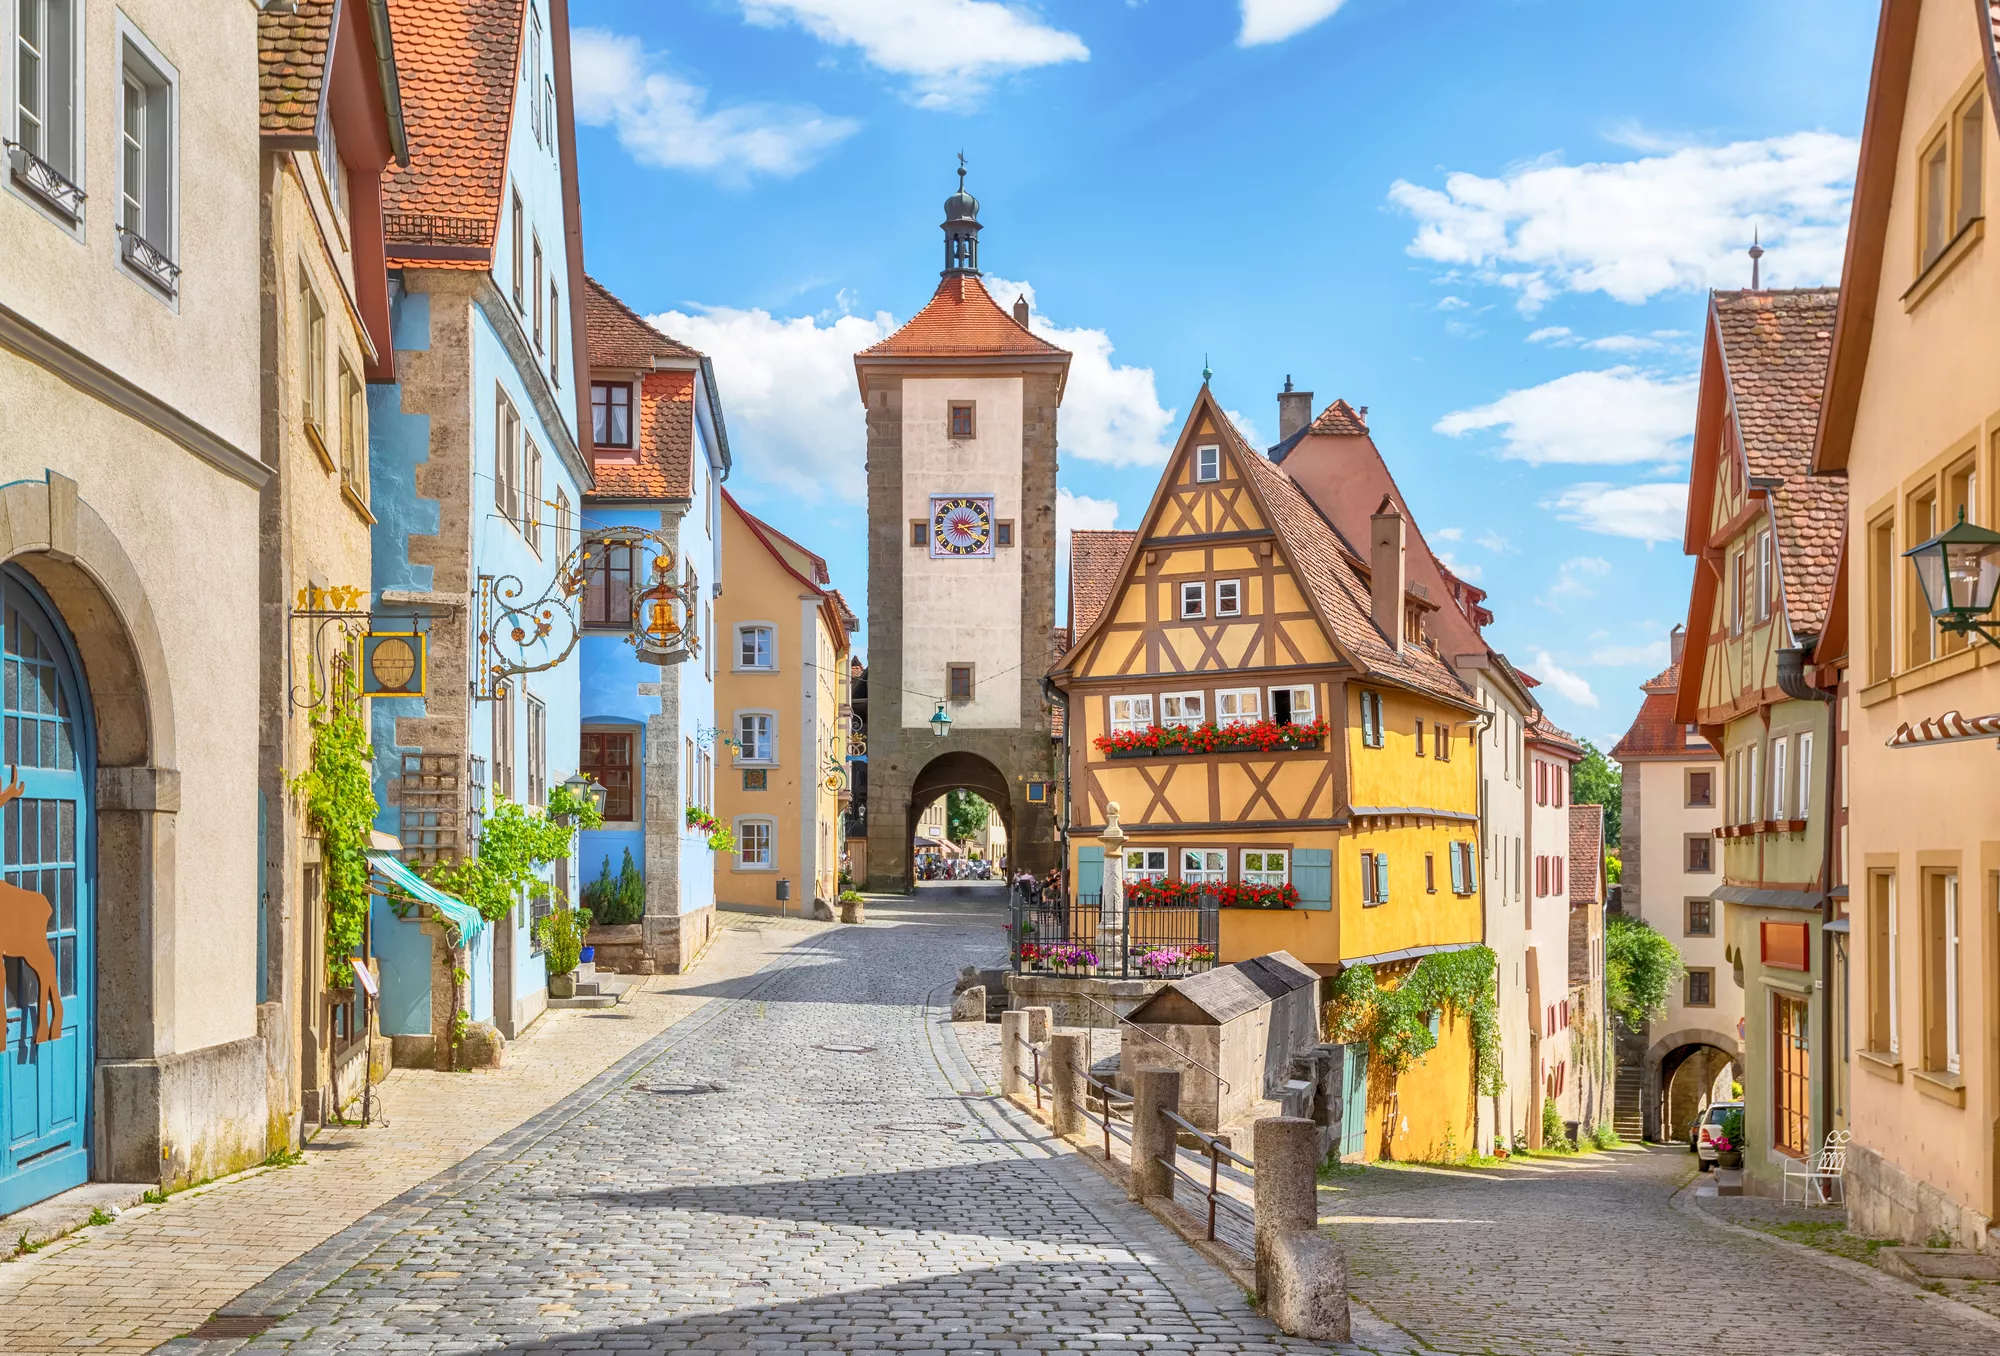 Straat in een middeleeuwse stad met kleurrijke huisjes